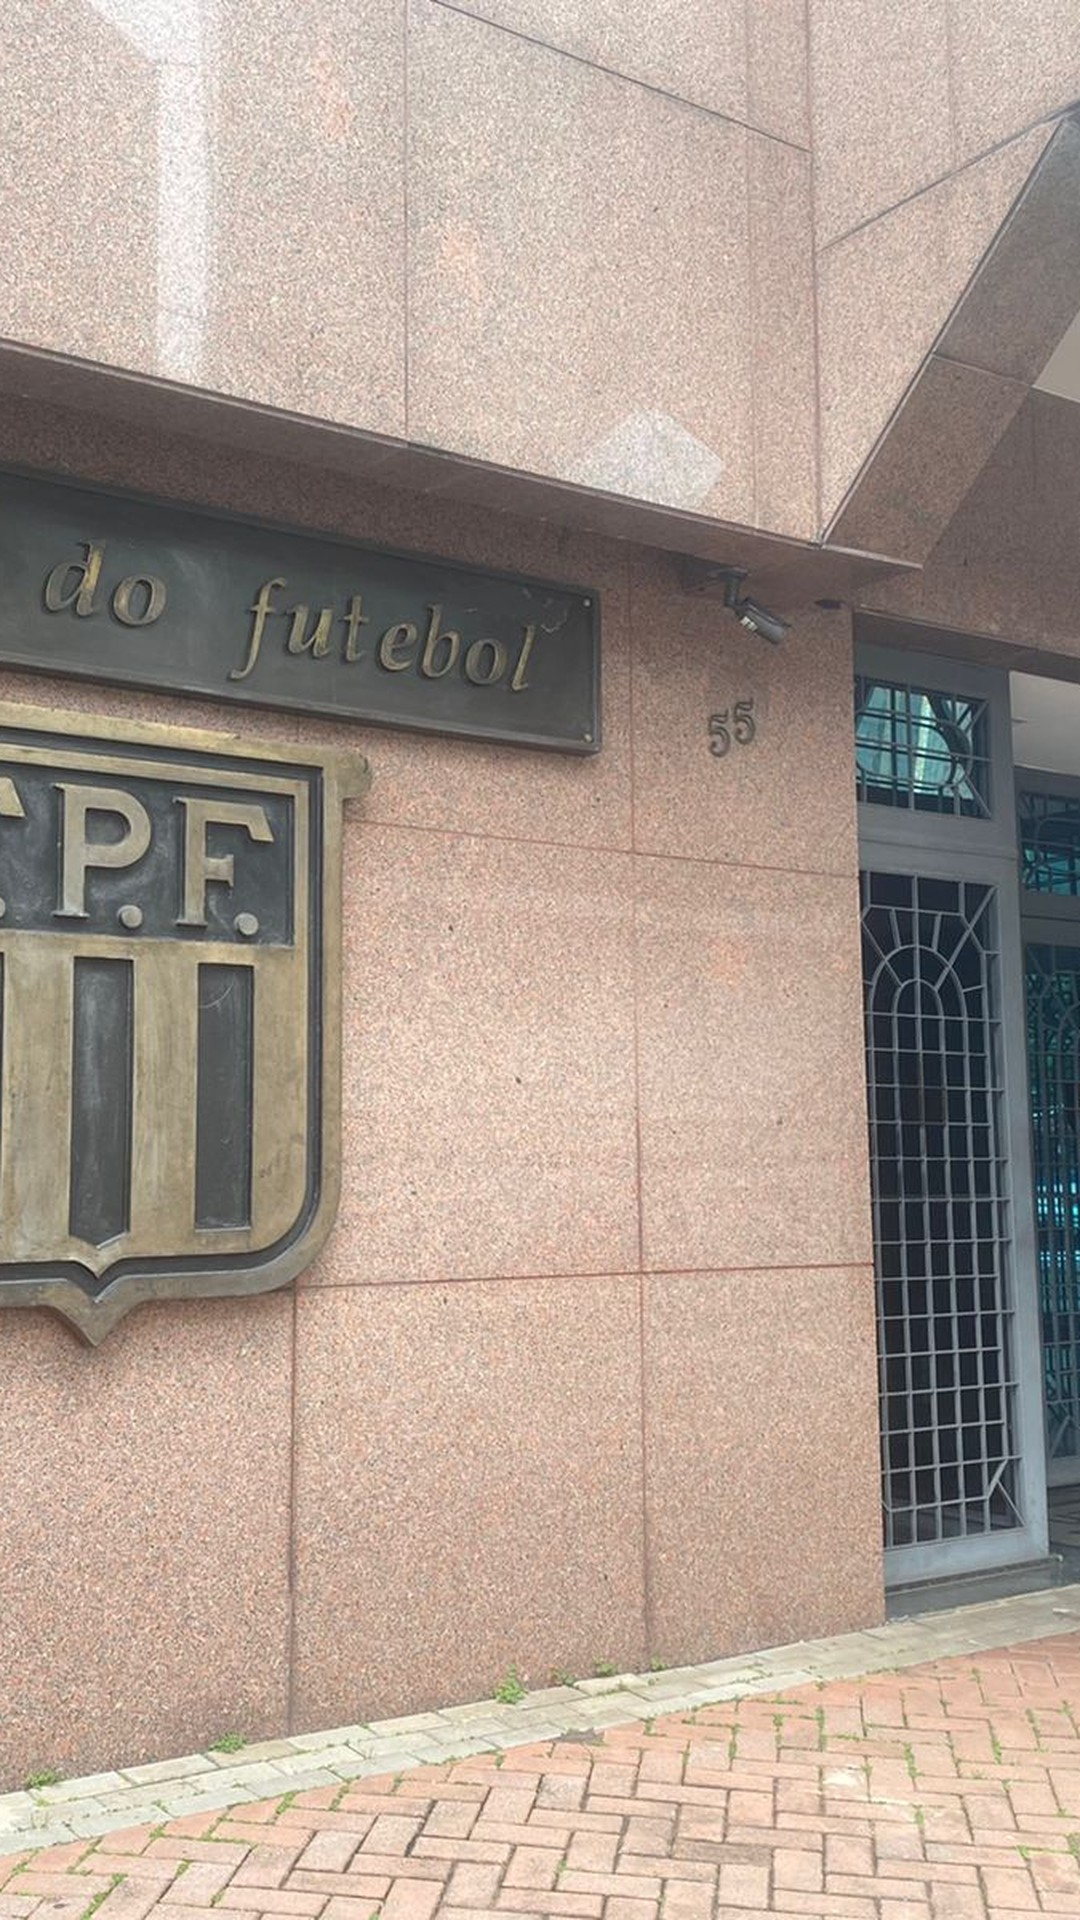 FPF reconhece título Paulista do Juventus da Mooca após 87 anos